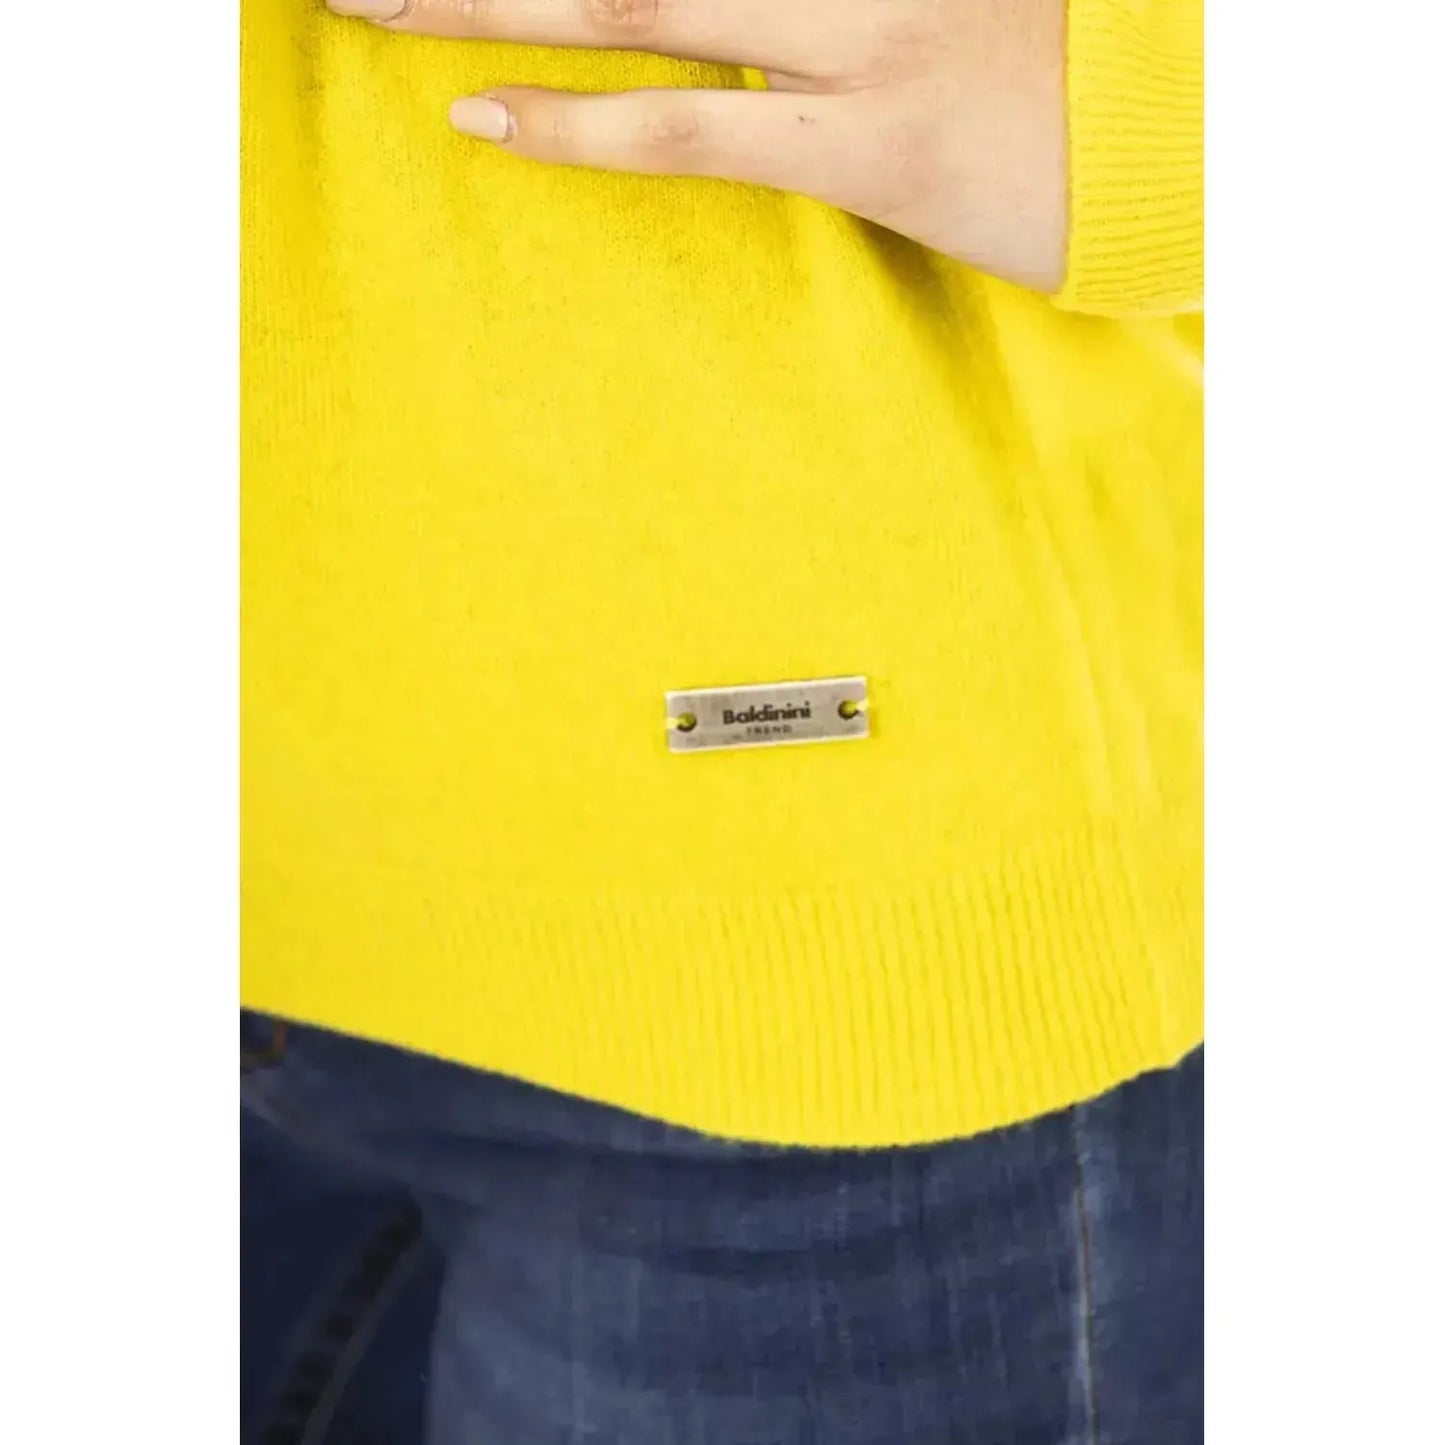 Baldinini TrendChic Wool-Cashmere Crewneck Sweater in YellowMcRichard Designer Brands£99.00